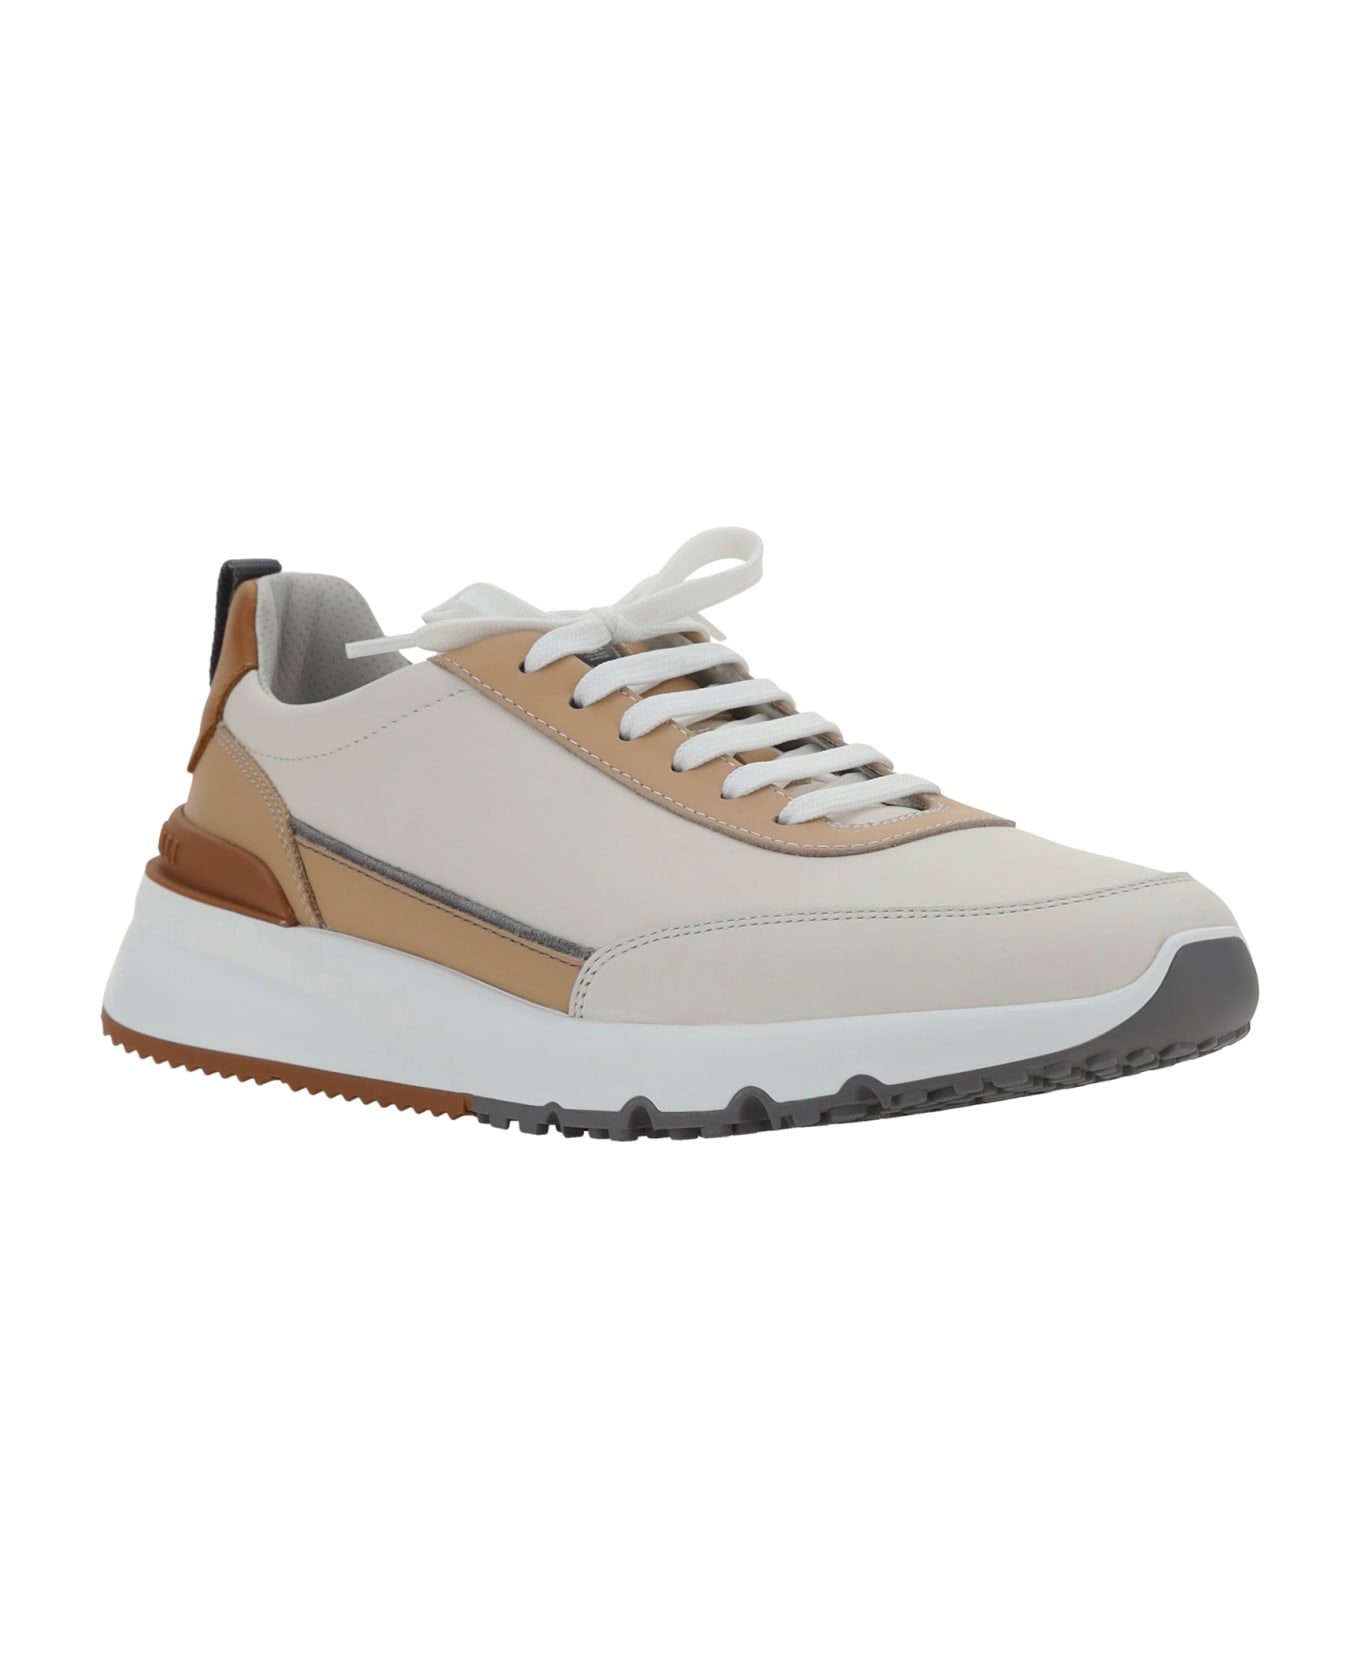 Brunello Cucinelli Runner White Sneakers - Latte+sabbia+cuoio+fumo